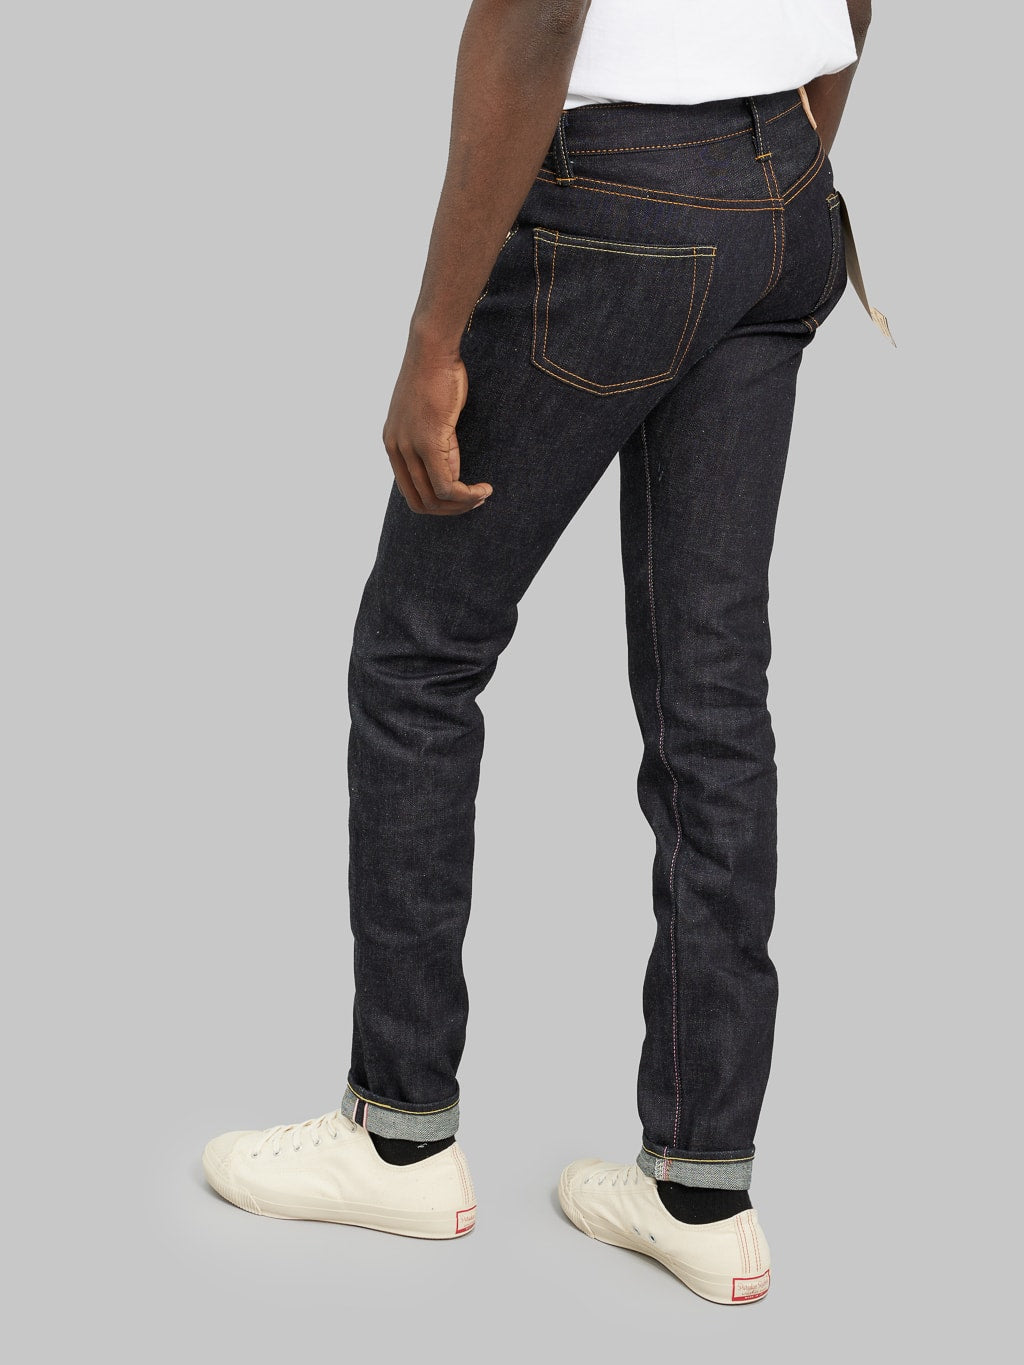 momotaro jeans 0306 12 12oz selvedge denim tight tapered slim